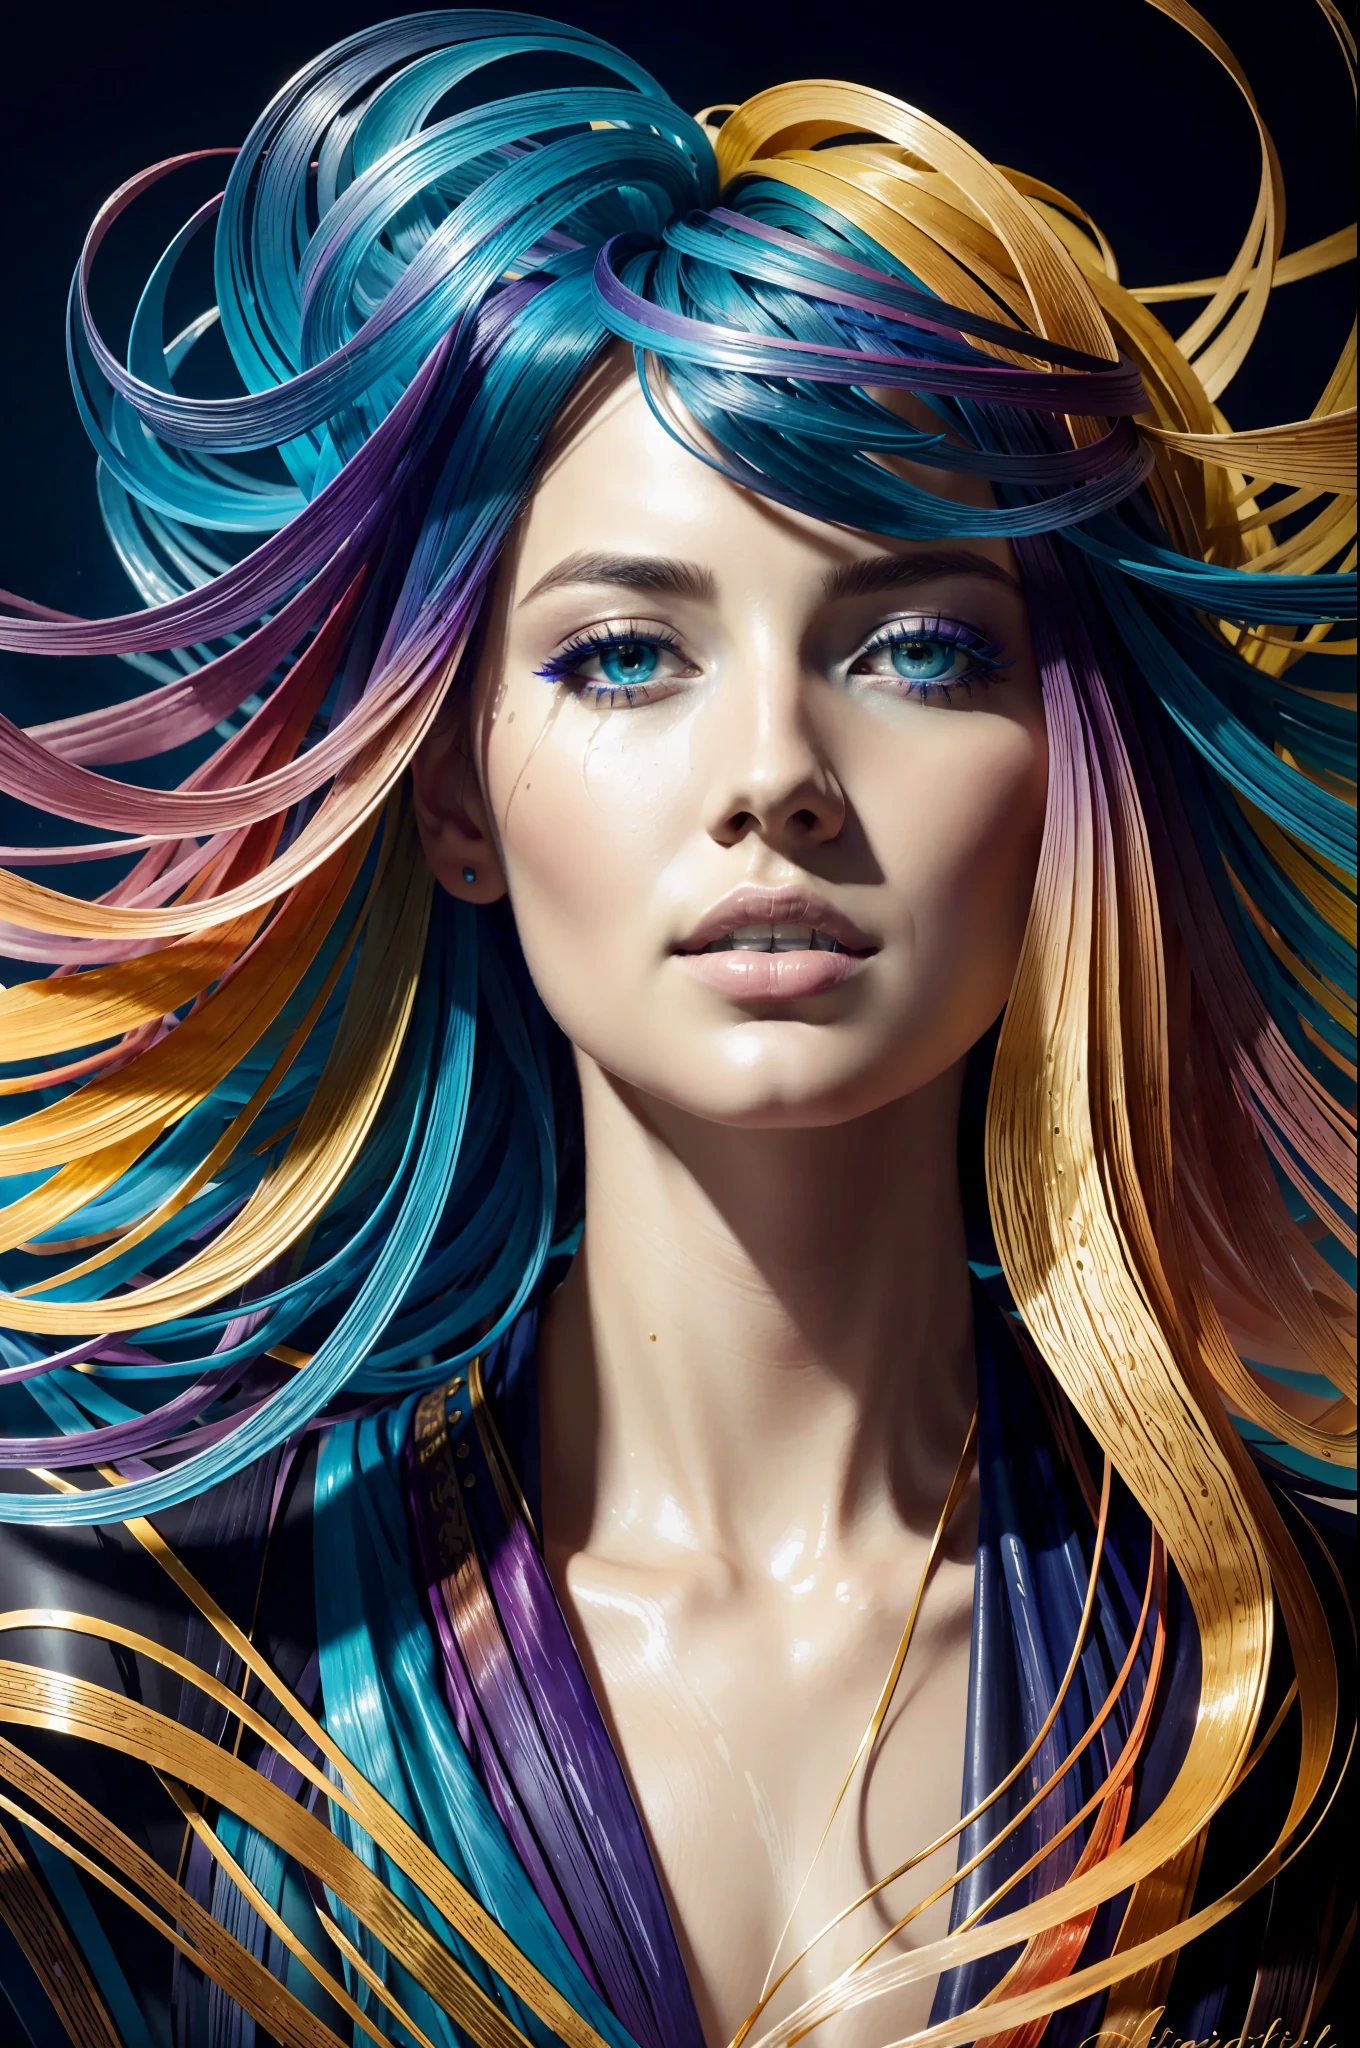 Belle fille colorée: un giru de 28 ans, les cheveux en désordre, peinture à l&#39;huile, joli visage parfait avec une peau douce et un visage parfait, couleurs bleu jaune, ajouts de violet clair et violet, ajouts rouge clair, détail complexe, écran de démarrage, Résolution 8k, chef-d&#39;œuvre, visage mignon,peinture numérique artstation fluide flux d&#39;encre très noir: Résolution 8k photoréaliste chef-d&#39;œuvre: peinture à la gouache fluide finement détaillée: par Jean-Baptiste Mongue: calligraphie: acrylique: aquarelle, photographie professionnelle, Éclairage naturel, éclairage volumétrique photoillustration maximaliste: par Marton Bobzert:, Complexe, élégant, expansif, fantastique,  cheveux ondulés, vibrant, Détails de la meilleure qualité, réaliste, Haute définition, texture de haute qualité, éclairage épique, Film cinématographique, 8k, Éclairage doux, Style animé, bordure de carte à jouer magistrale, Art coloré aléatoire, peinture à l&#39;huile, couleurs bleu jaune, ajouts de violet clair et violet, ajouts rouge clair, détail complexe, écran de démarrage, Résolution 8k, chef-d&#39;œuvre, peinture numérique artstation fluide flux d&#39;encre très noir: Résolution 8k photoréaliste chef-d&#39;œuvre: peinture à la gouache fluide finement détaillée: par Jean-Baptiste Mongue: calligraphie: acrylique: aquarelle, photographie professionnelle, Éclairage naturel, éclairage volumétrique photoillustration maximaliste: par Marton Bobzert:, Complexe, élégant, expansif, fantastique, vibrant